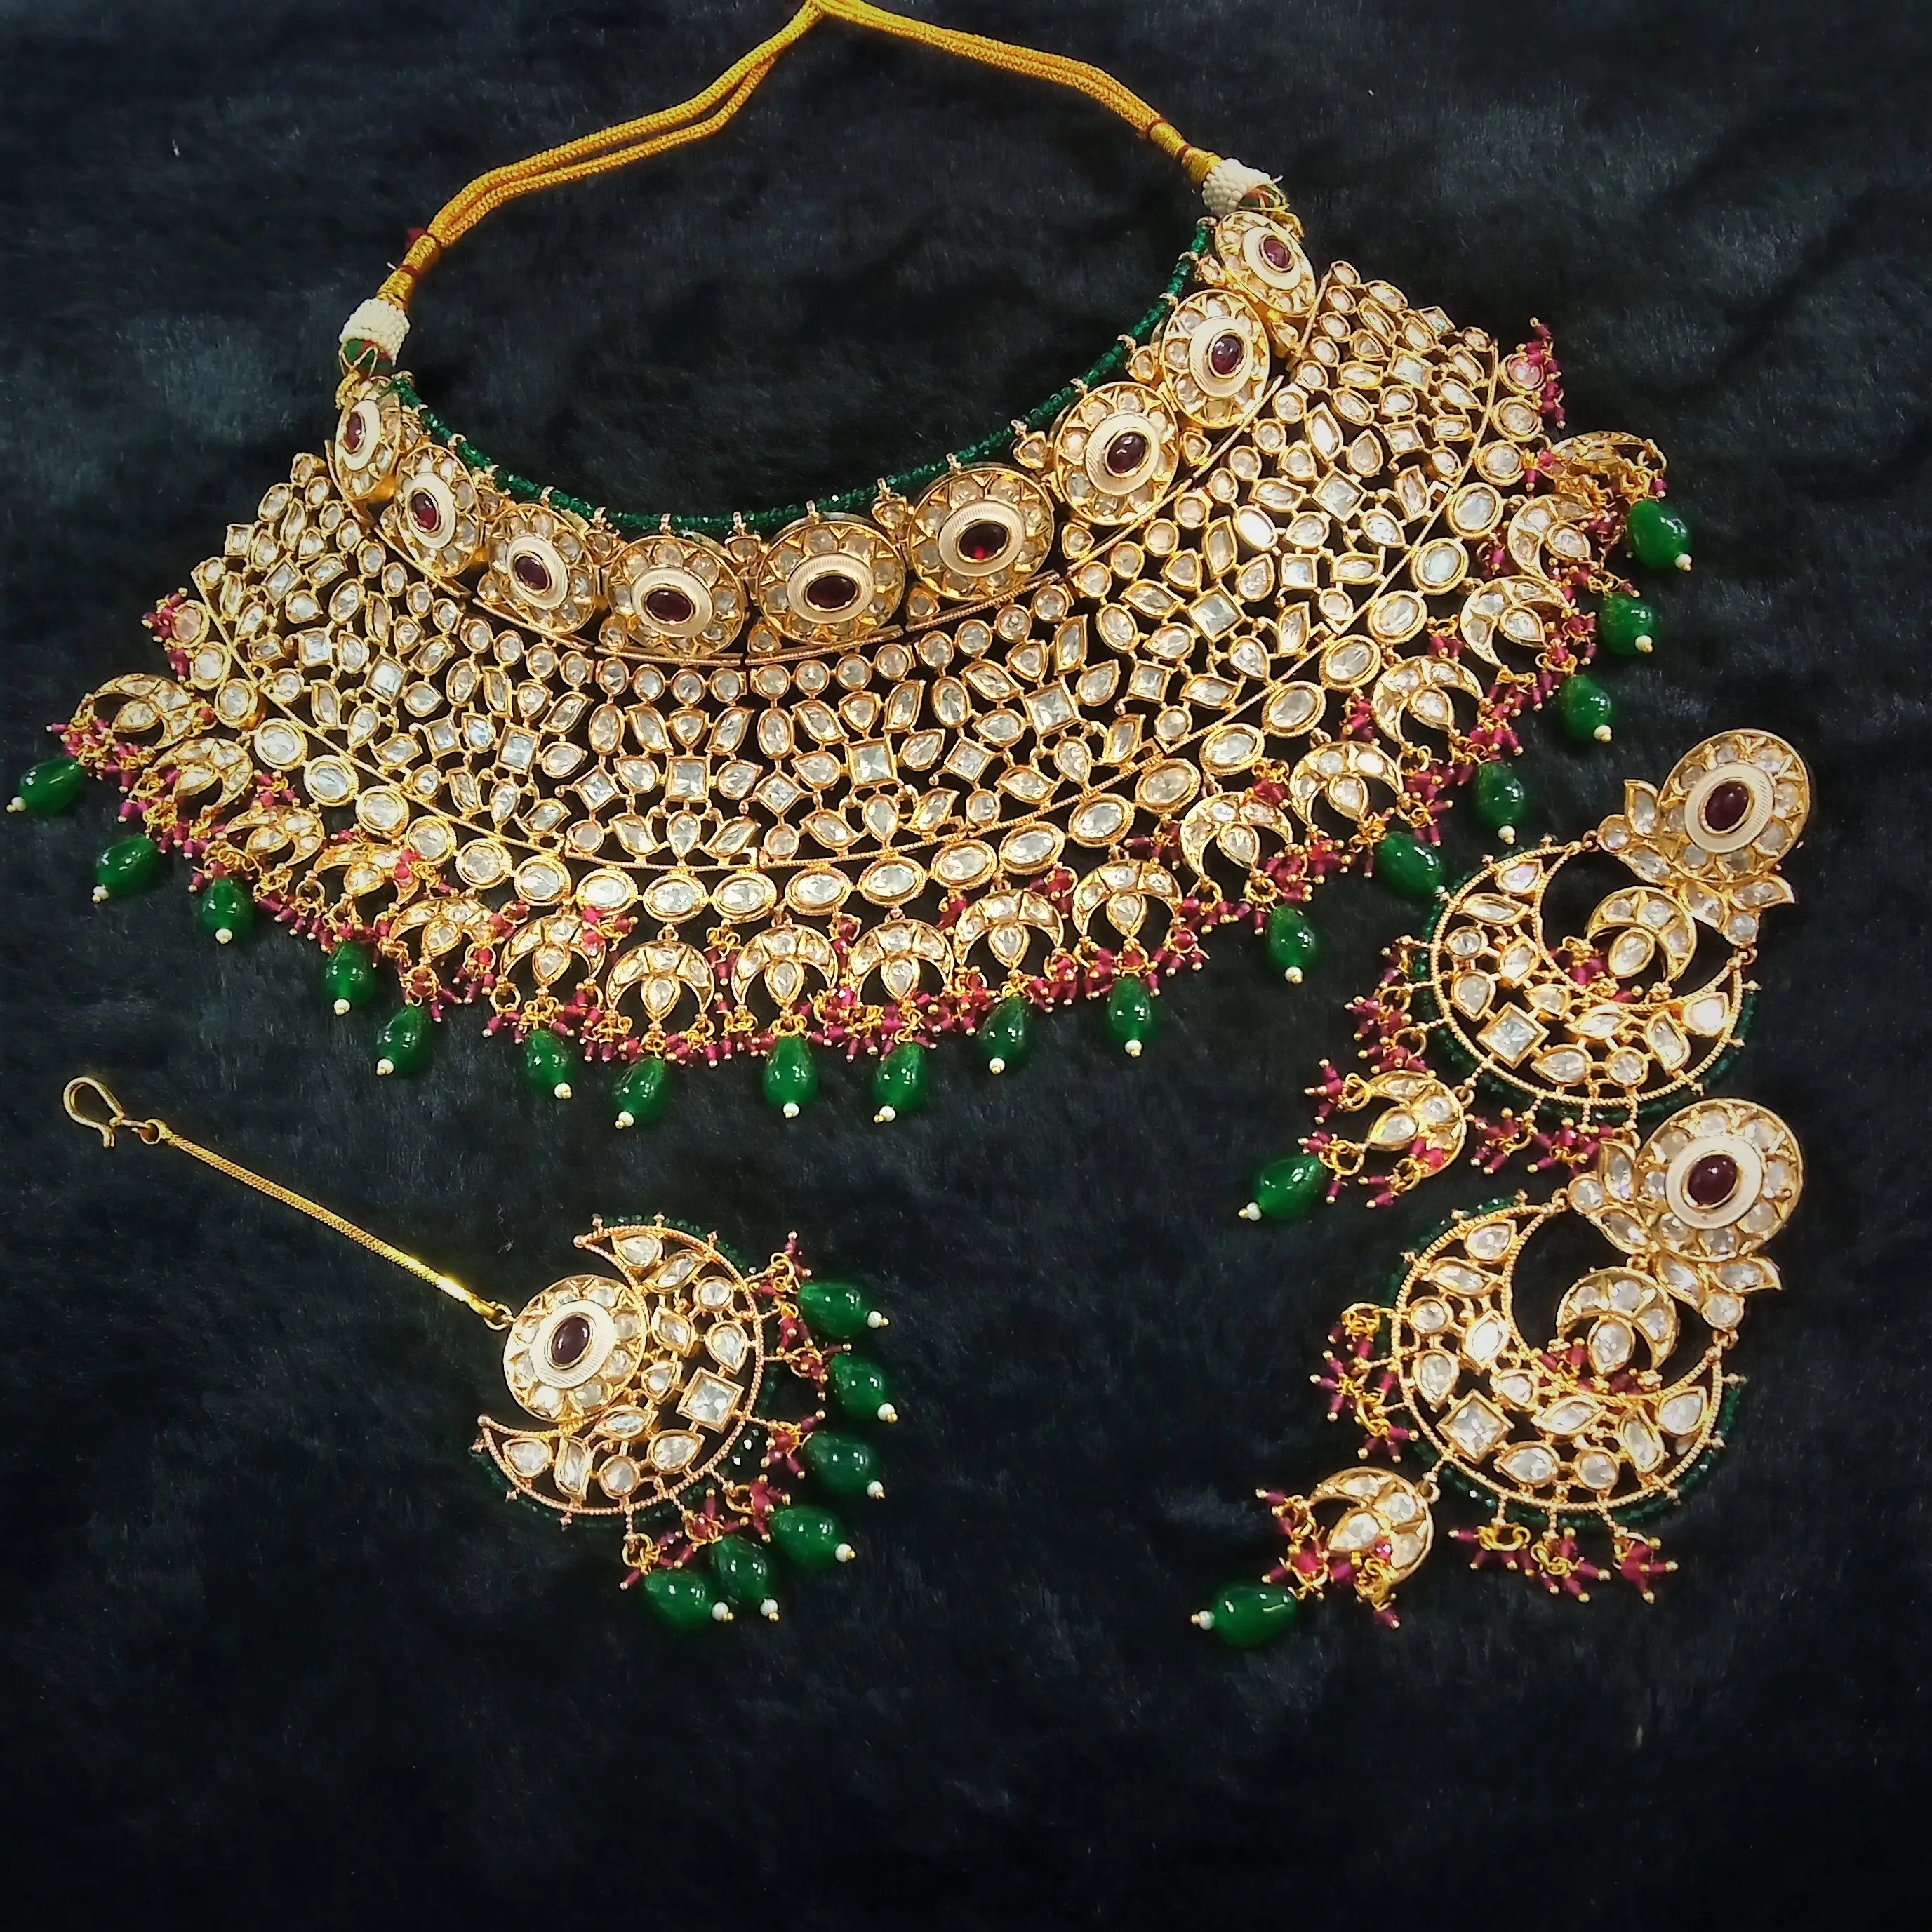 מסורתי הודי לבן וורוד Kundan אמריקאי יהלומים ופנינים ראש תכשיטי עיצוב לחתונה במחיר הנמוך ביותר